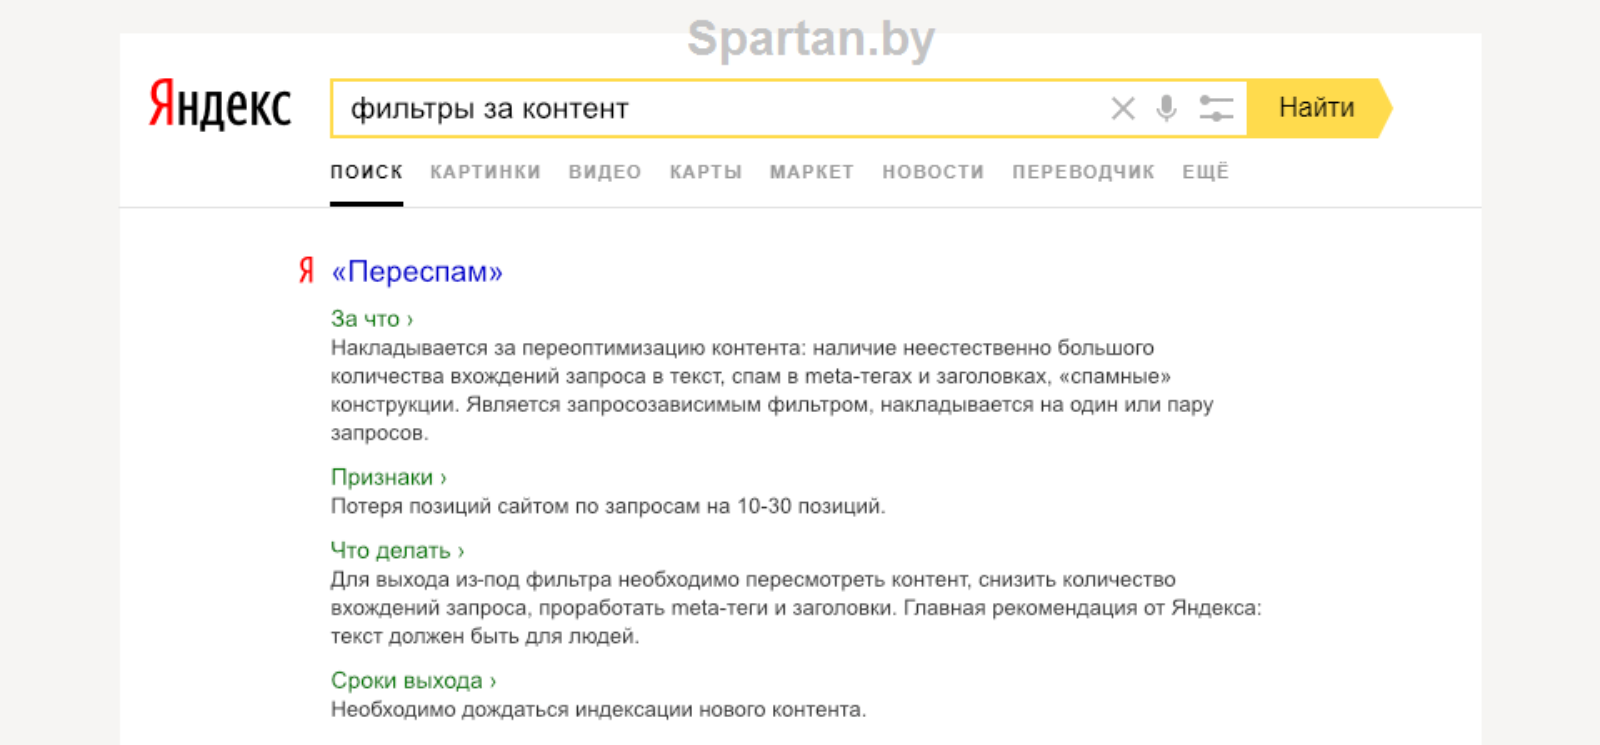 Все что нужно знать о фильтрах Яндекса